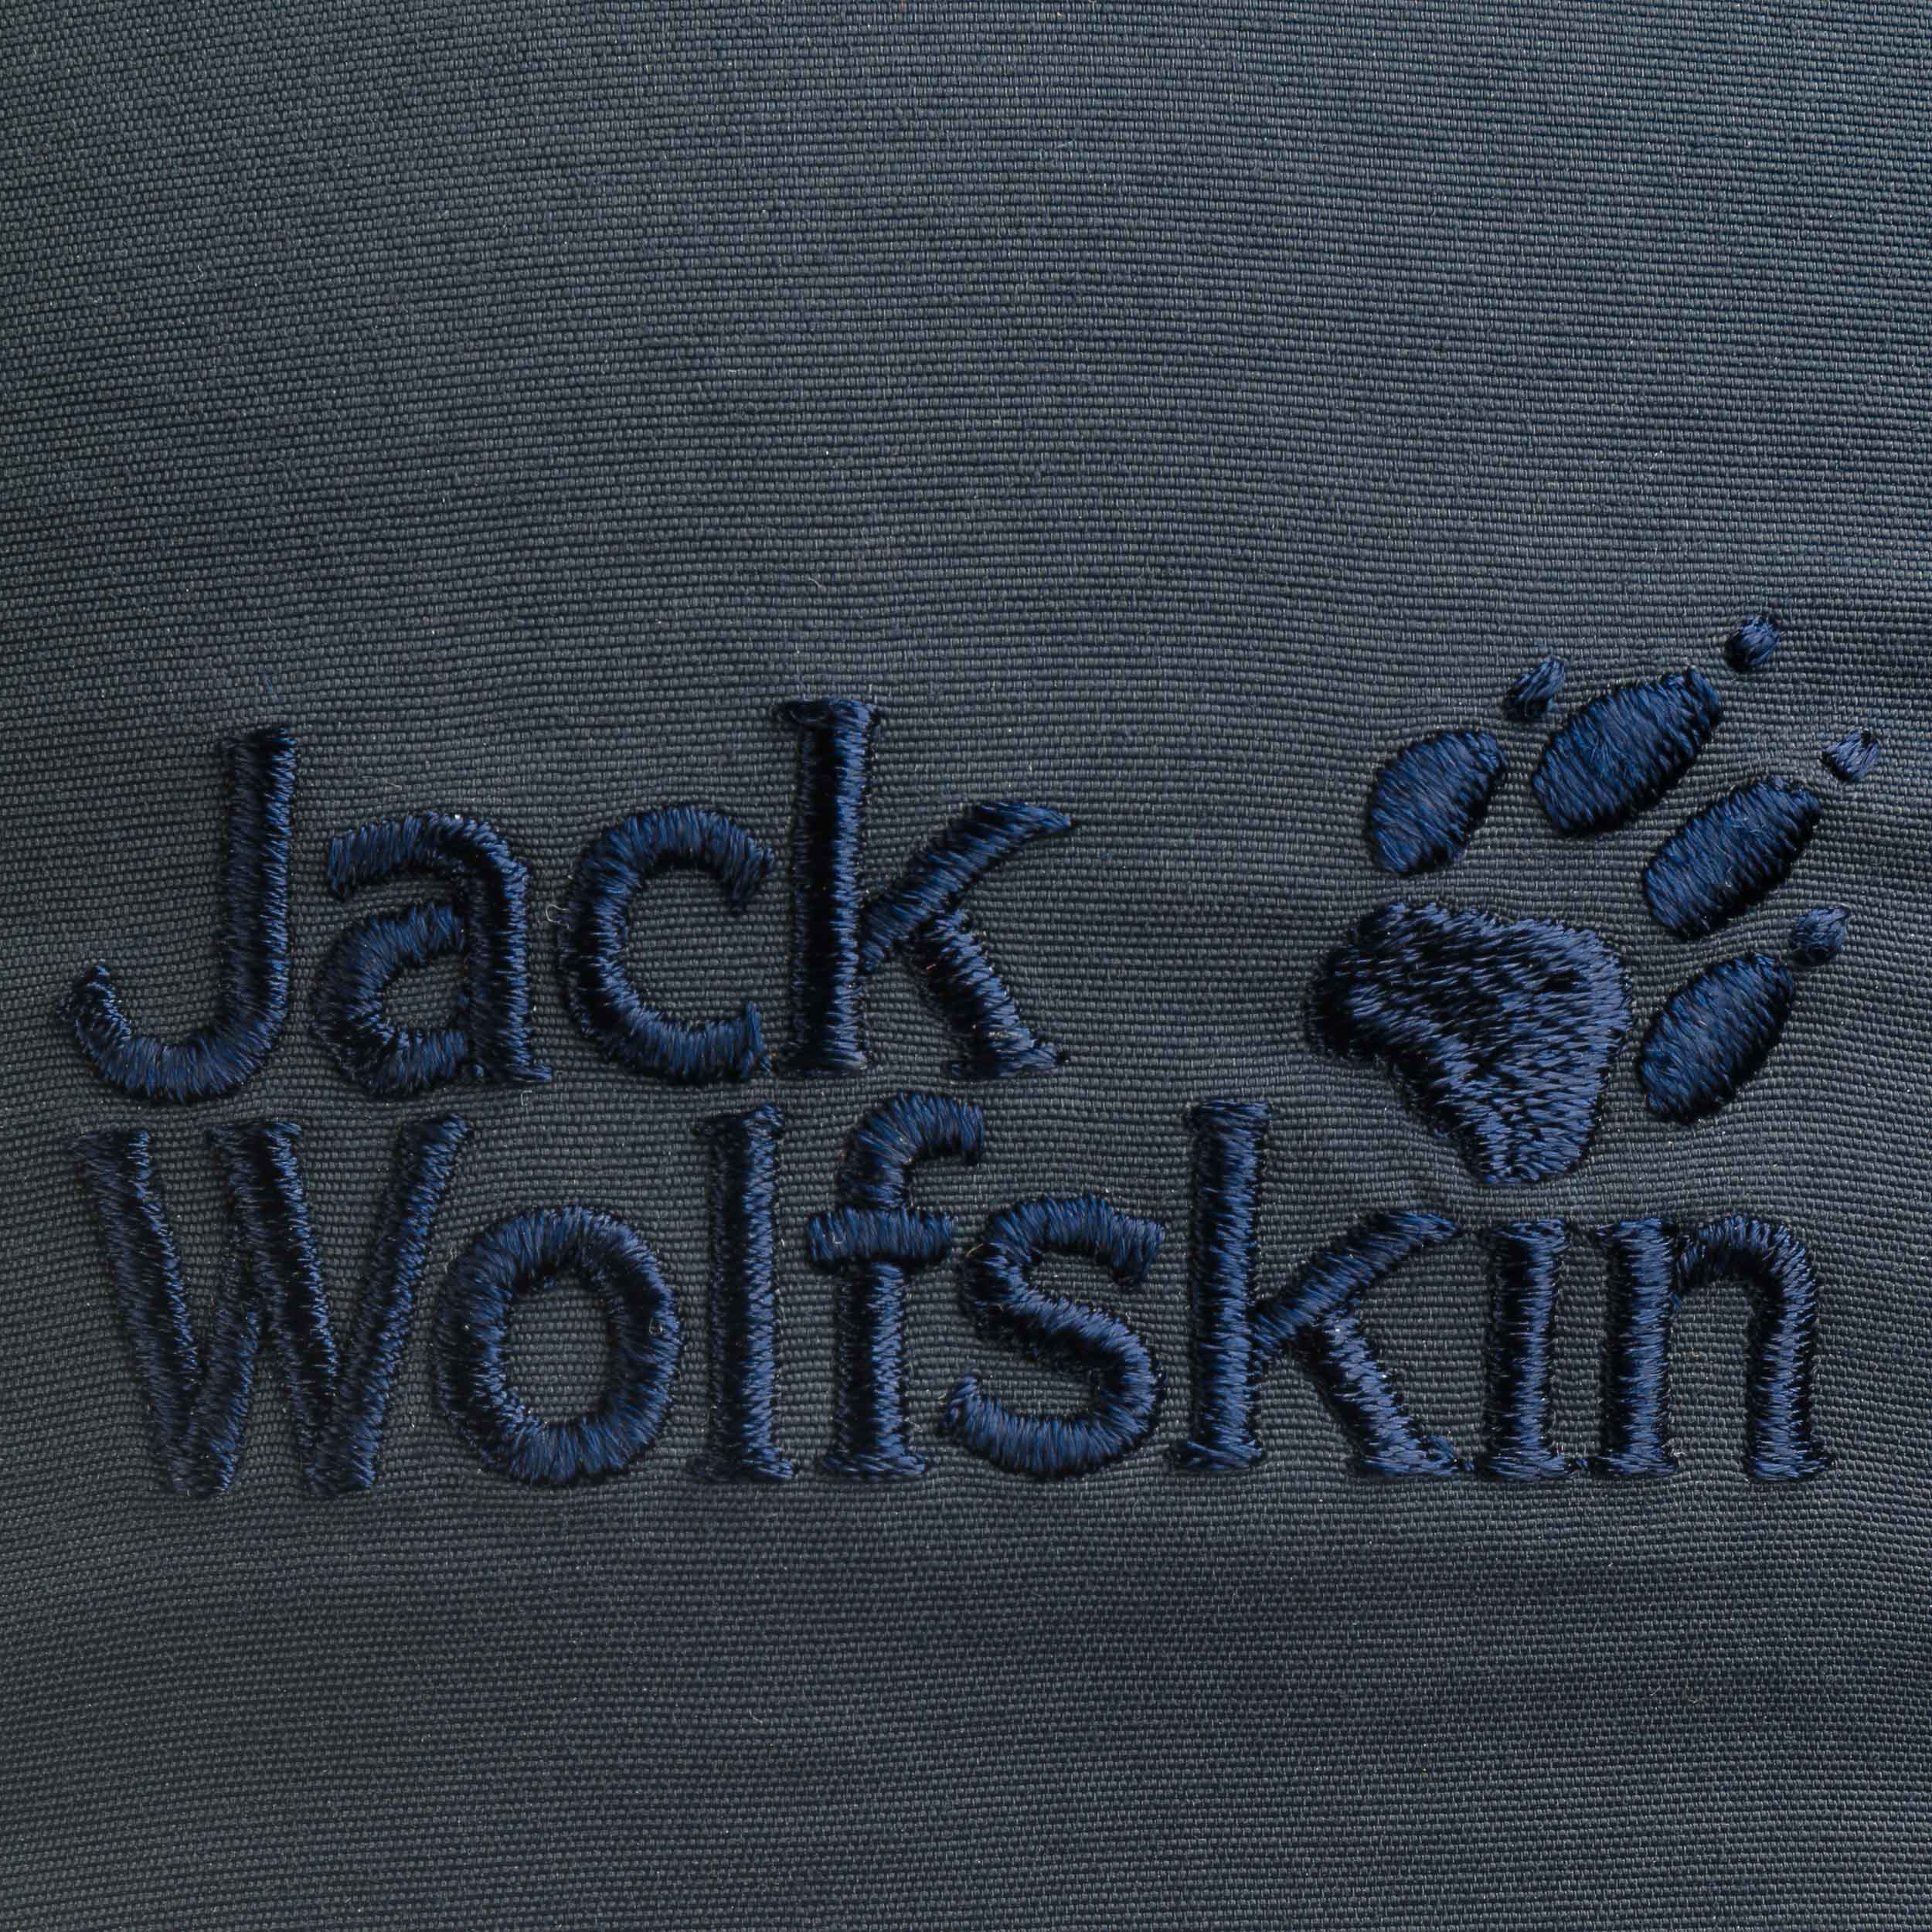 Supplex Vent Pro 29,95 € Jack by Cap Wolfskin 